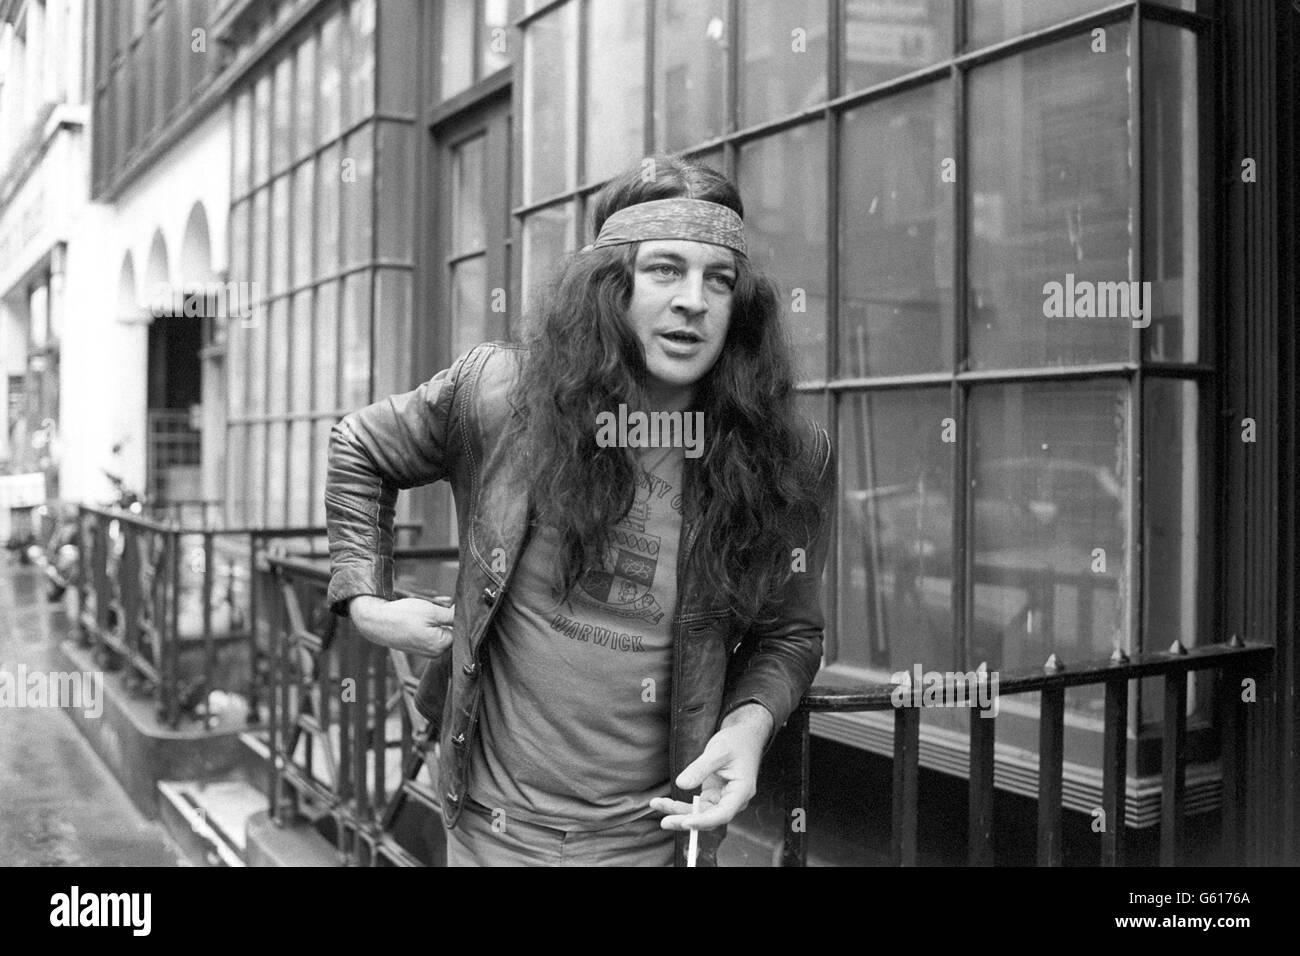 Ian Gillan, ancien chanteur du groupe de rock Deep Purple, à Londres aujourd'hui quand il a été annoncé qu'il allait se joindre à Black Sabbath. Banque D'Images